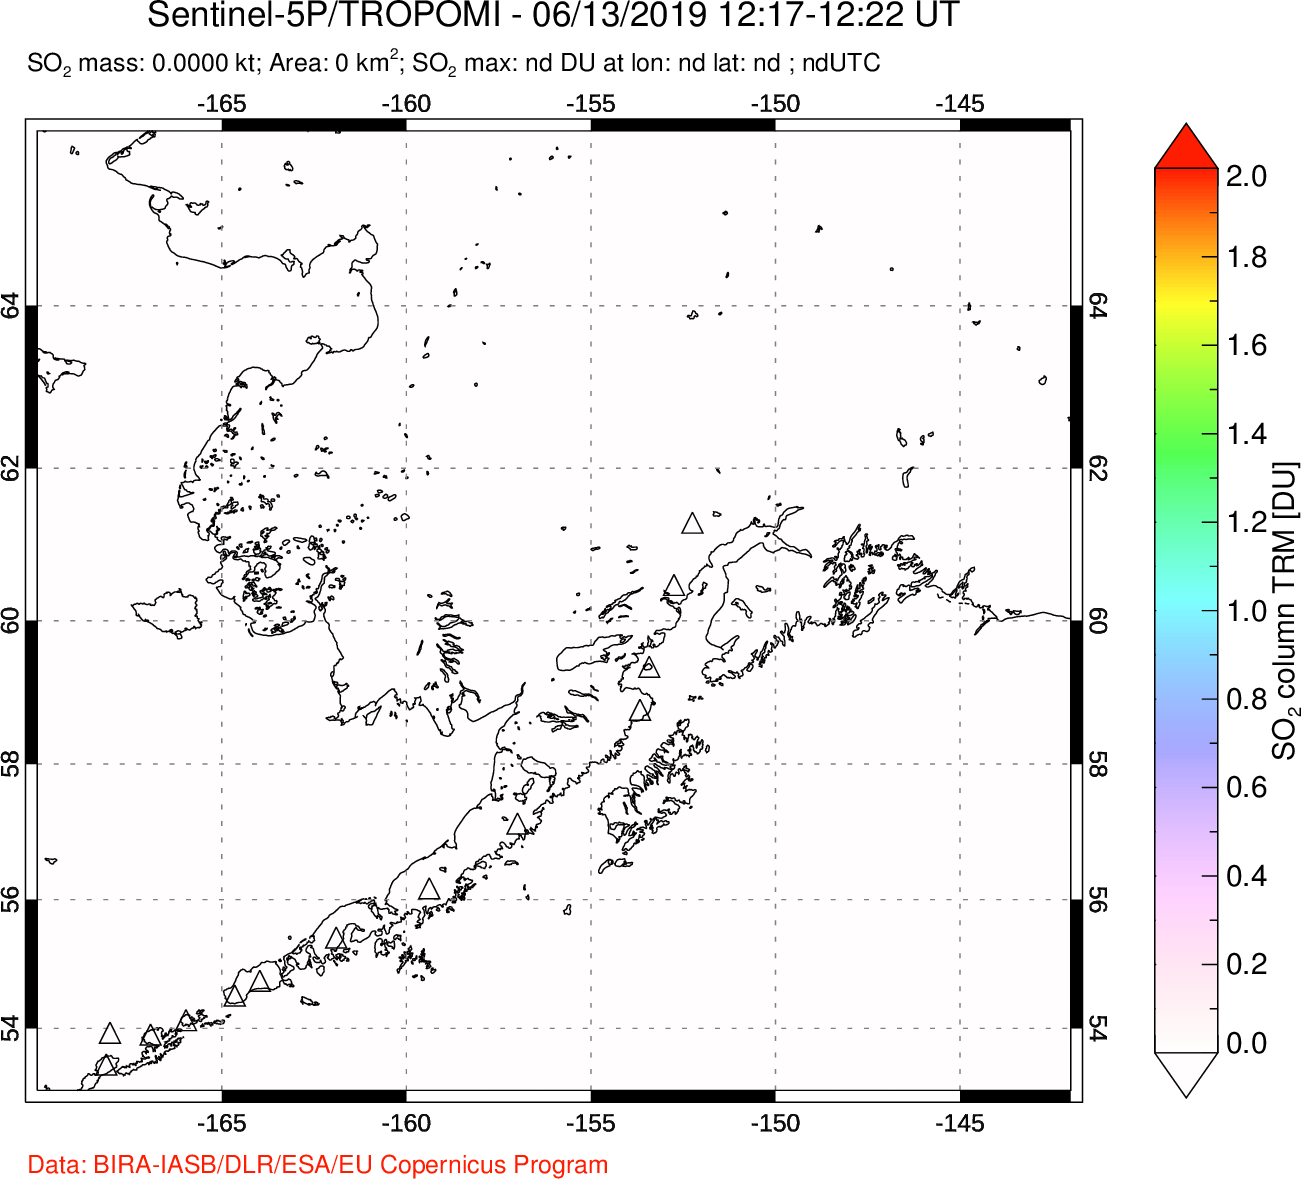 A sulfur dioxide image over Alaska, USA on Jun 13, 2019.